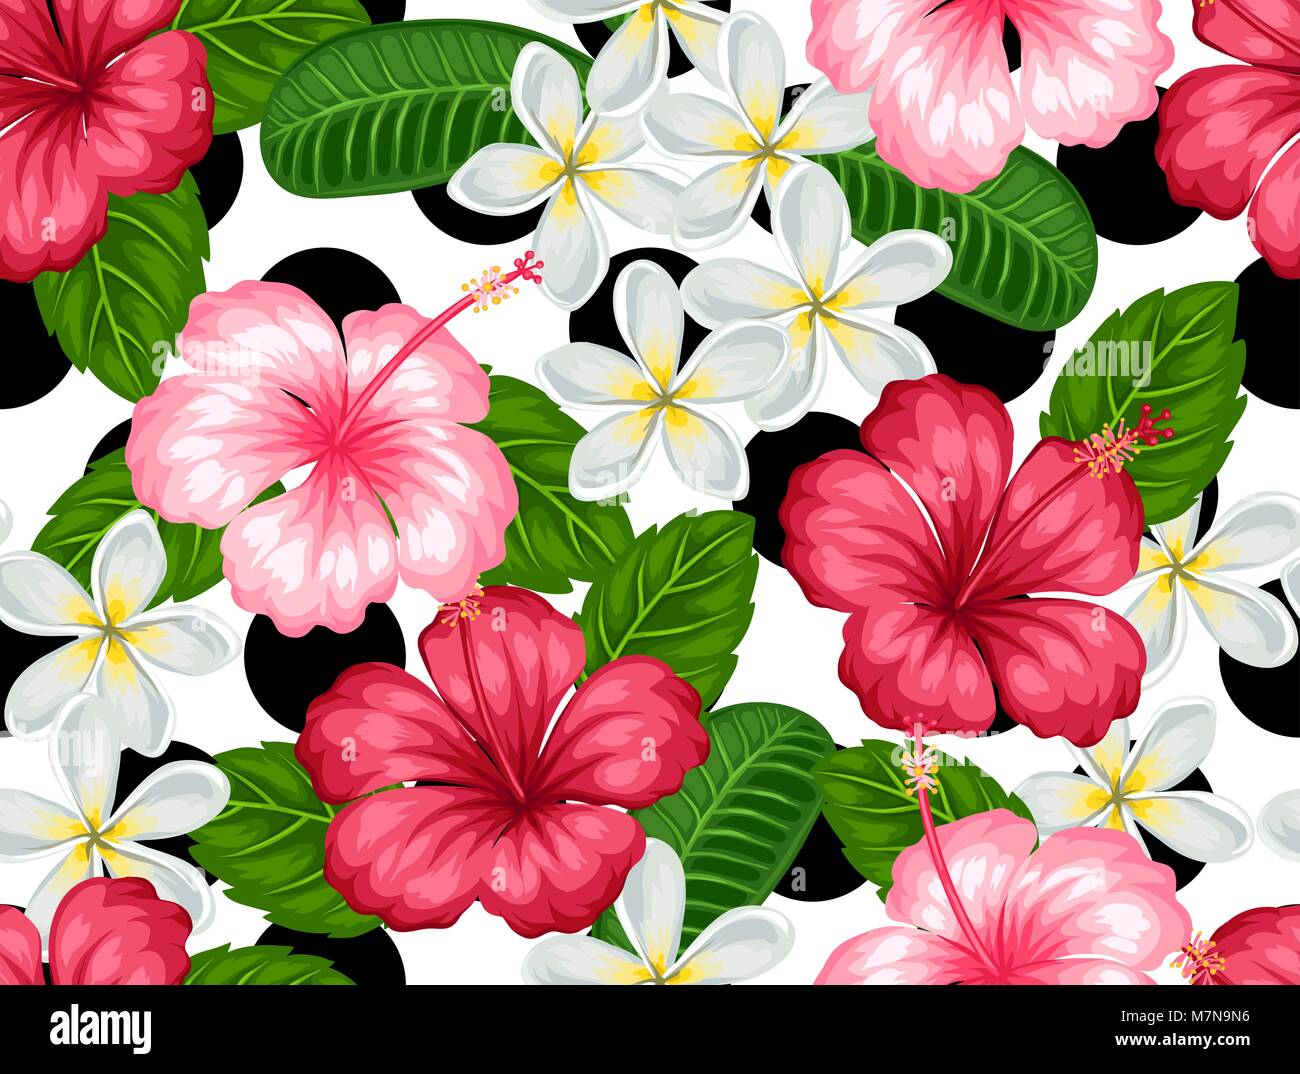 Nahtlose Muster mit tropischen Blumen Hibiskus und plumeria. Hintergrund  ohne freistellungsmaske gemacht. Einfach für Hintergrund, Textil,  Verpackung Papier Stock-Vektorgrafik - Alamy